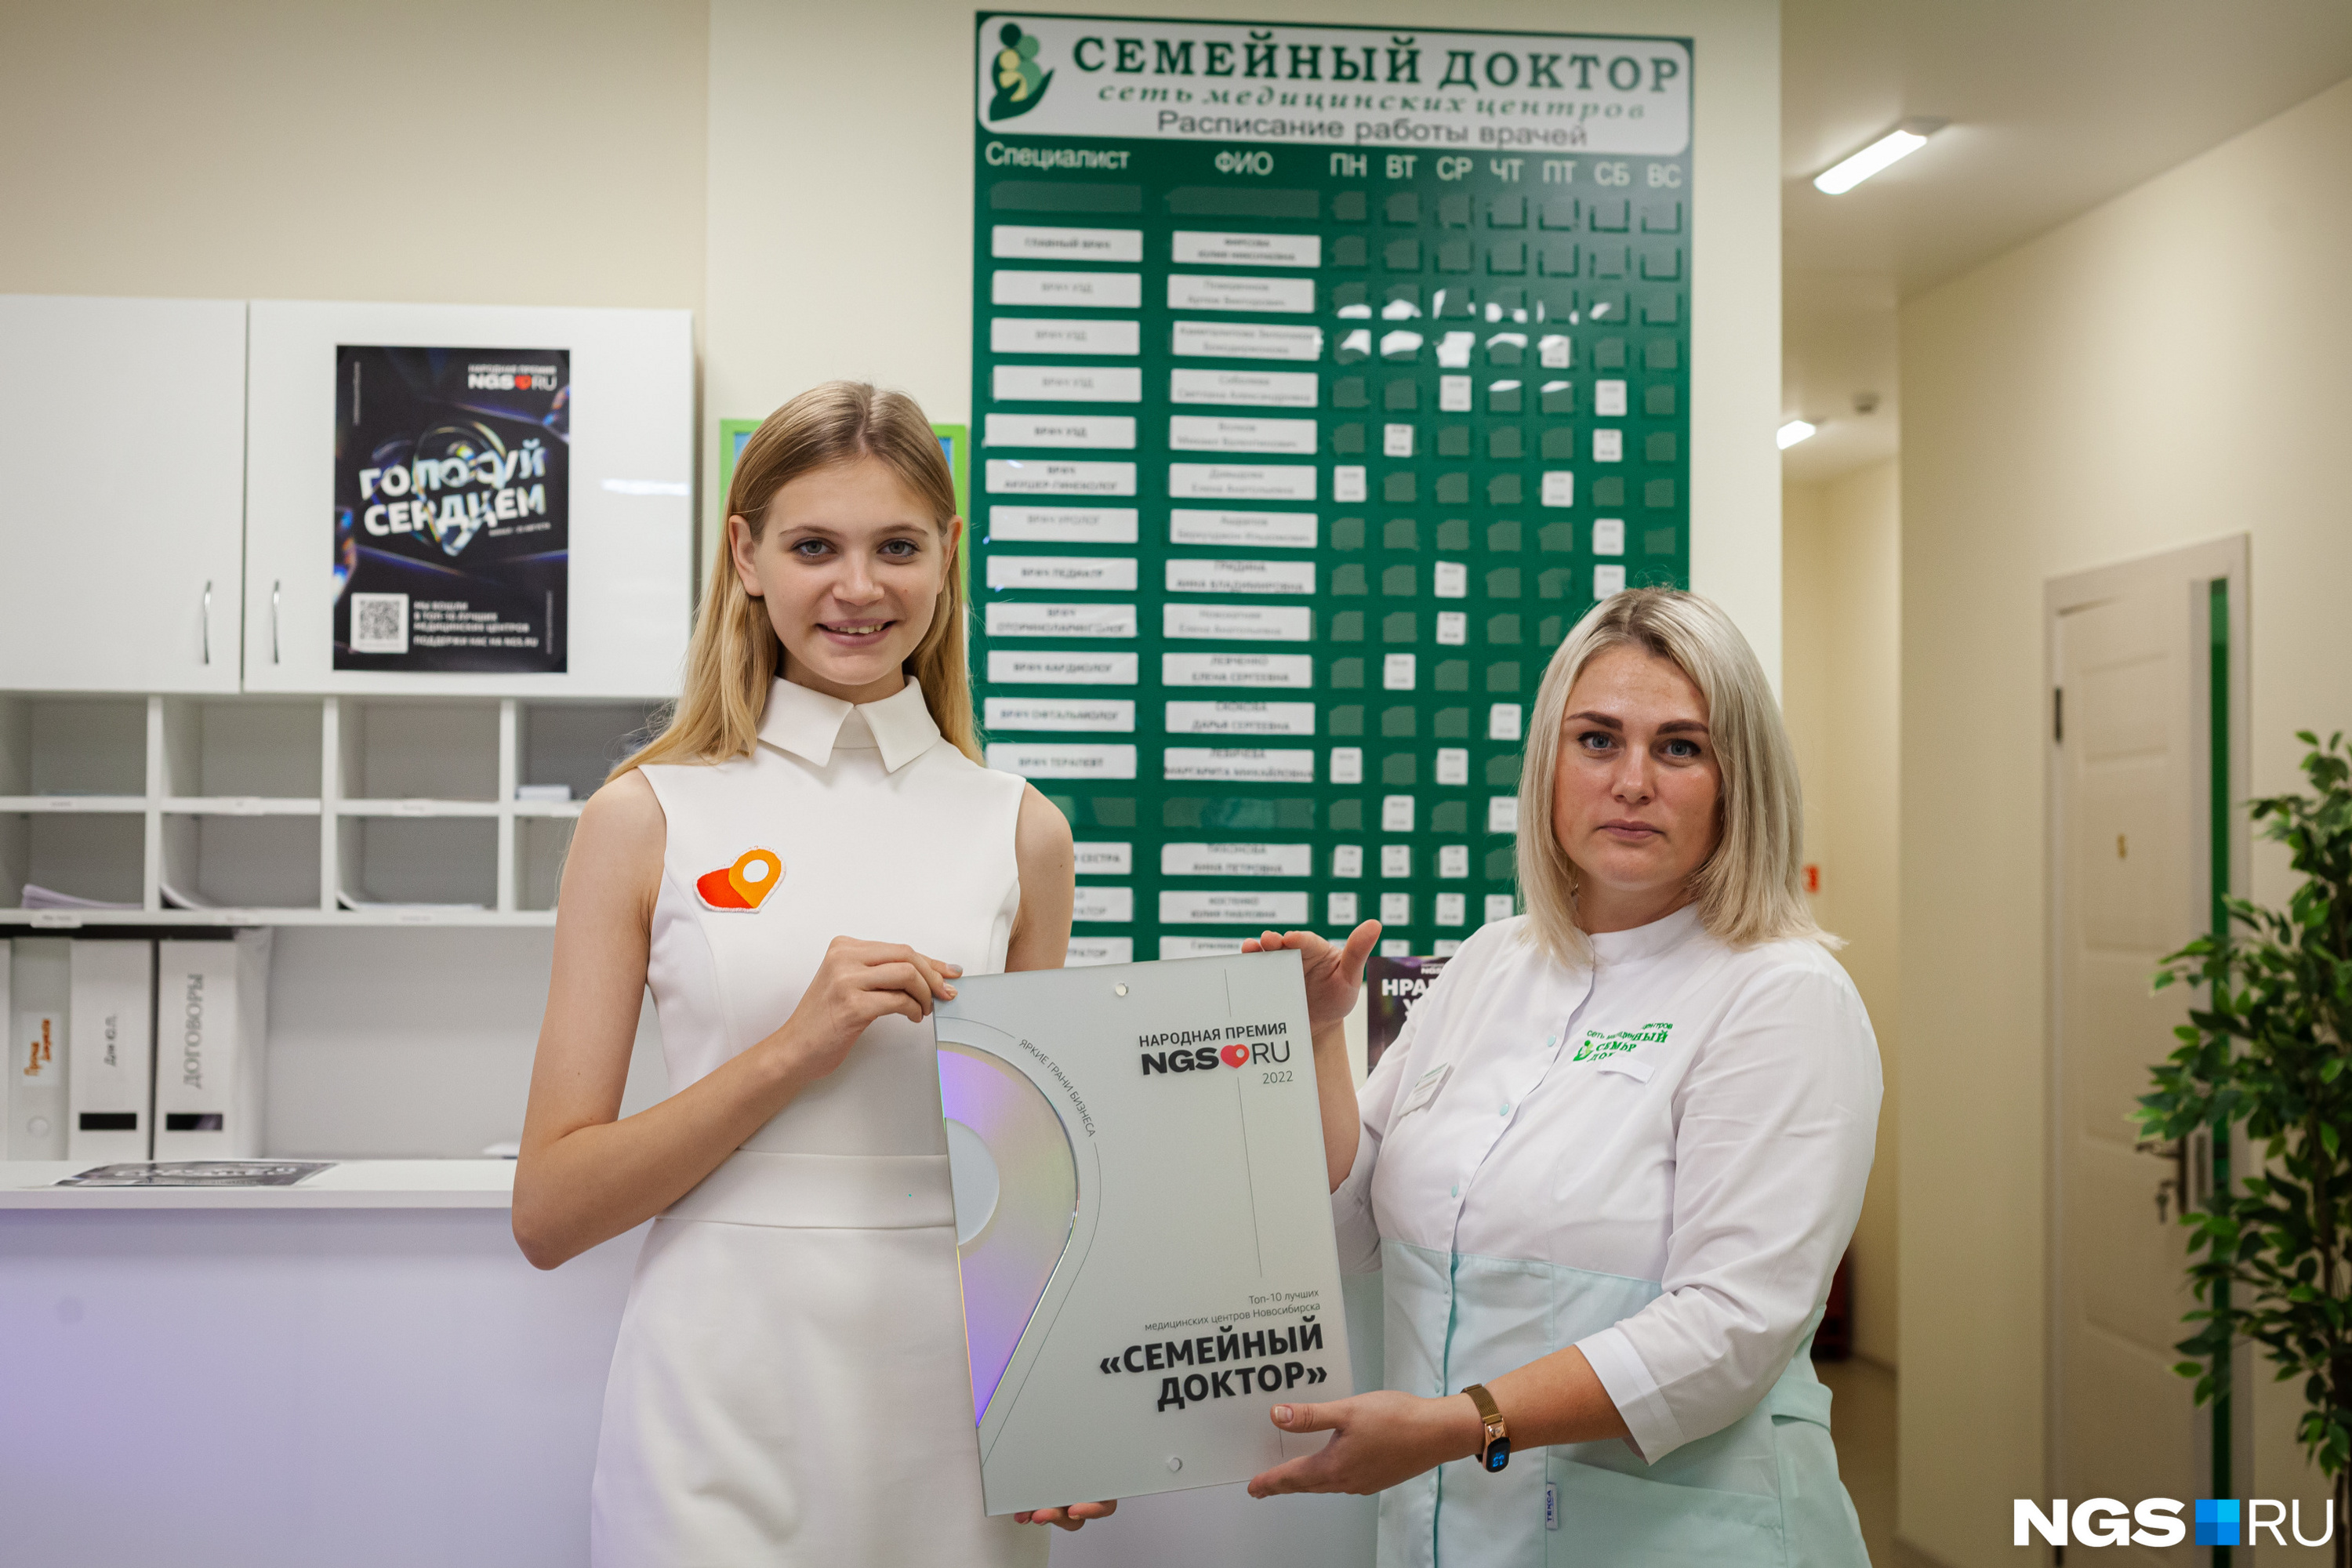 Клиника «Семейный доктор» была основана доктором Юлией Фирсовой в 2016 году по формату «у дома», а теперь это 6 медицинских центров в Новосибирске